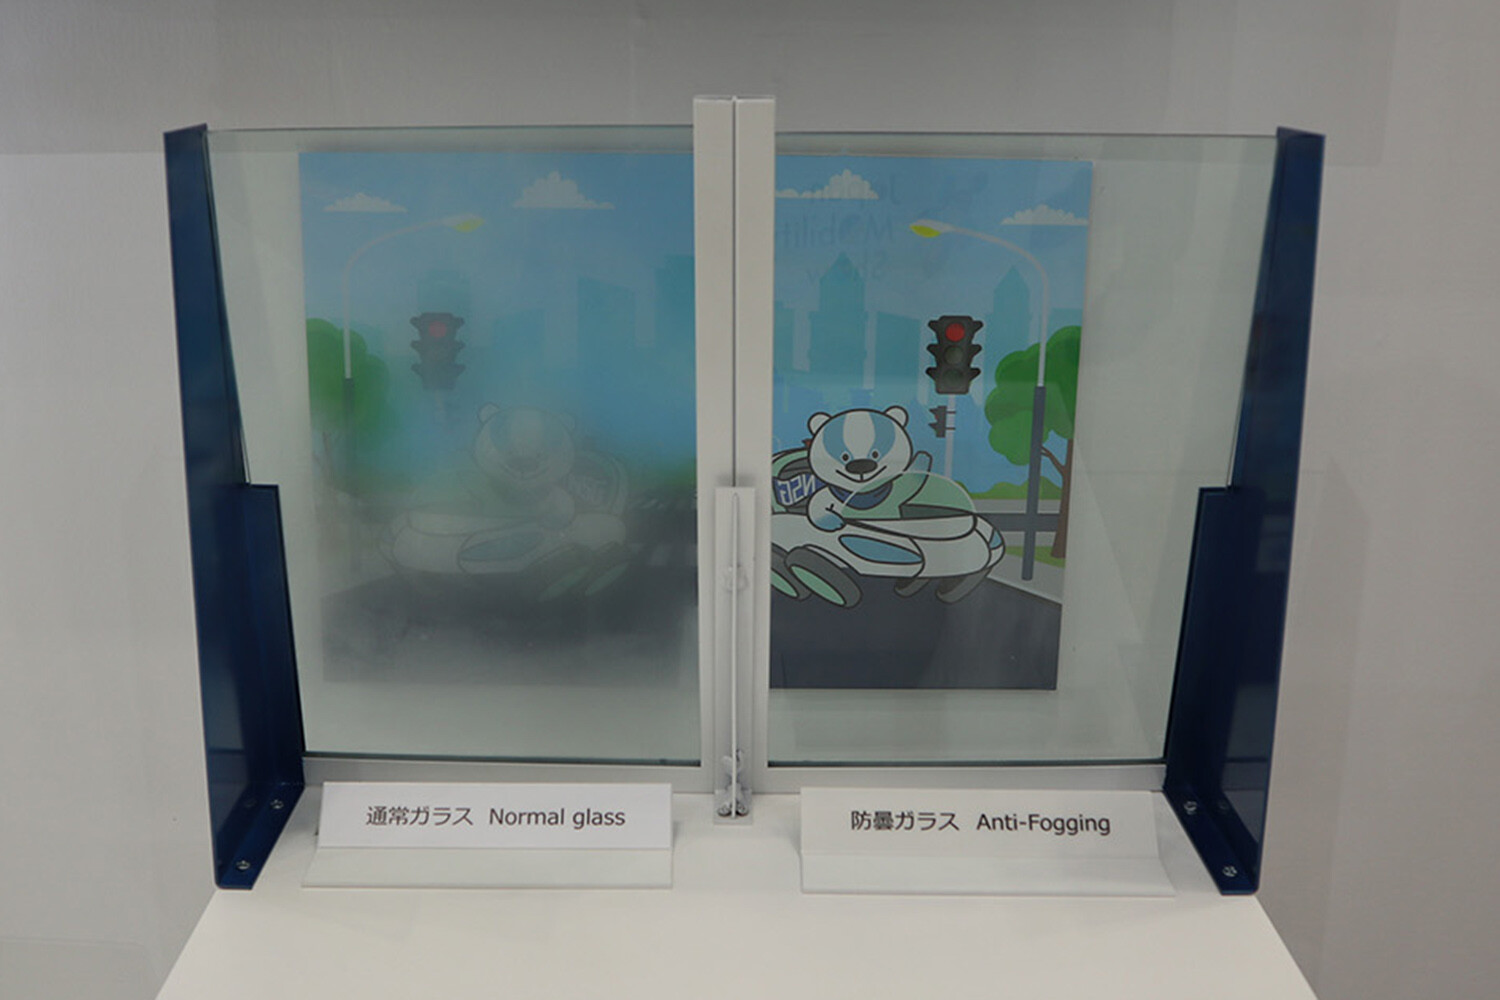 【ジャパンモビリティショーの最新技術】「曇らないガラス」に「汚れないガラス」まで登場！ 快適なドライブを実現するためのガラス新時代の到来です